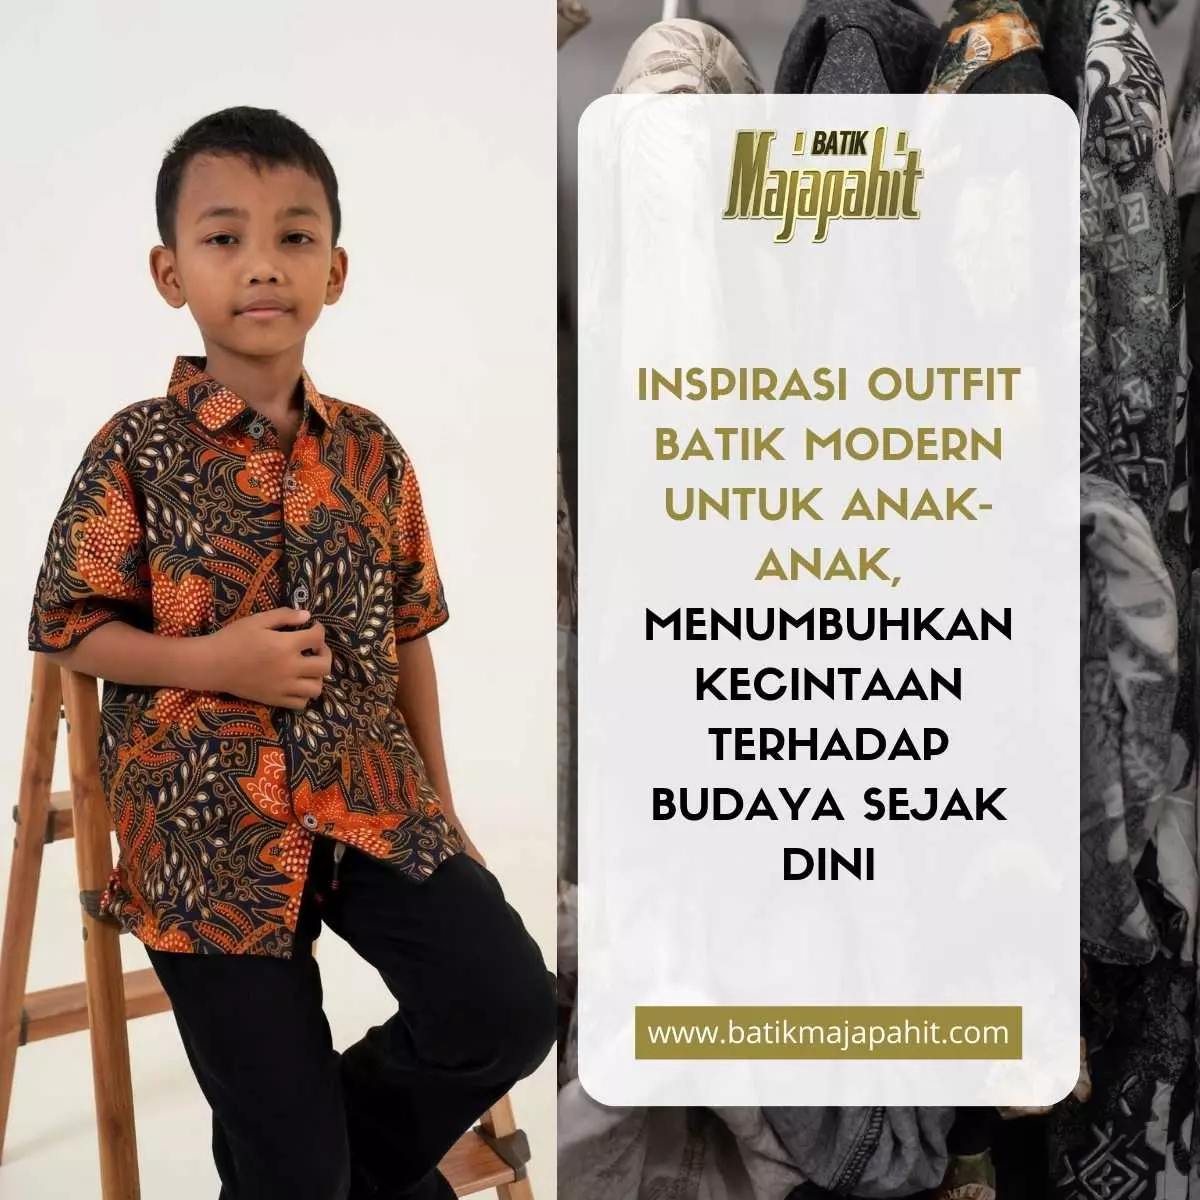 Inspirasi Outfit Batik Modern untuk Anak-Anak, Menumbuhkan Kecintaan Terhadap Budaya Sejak Dini